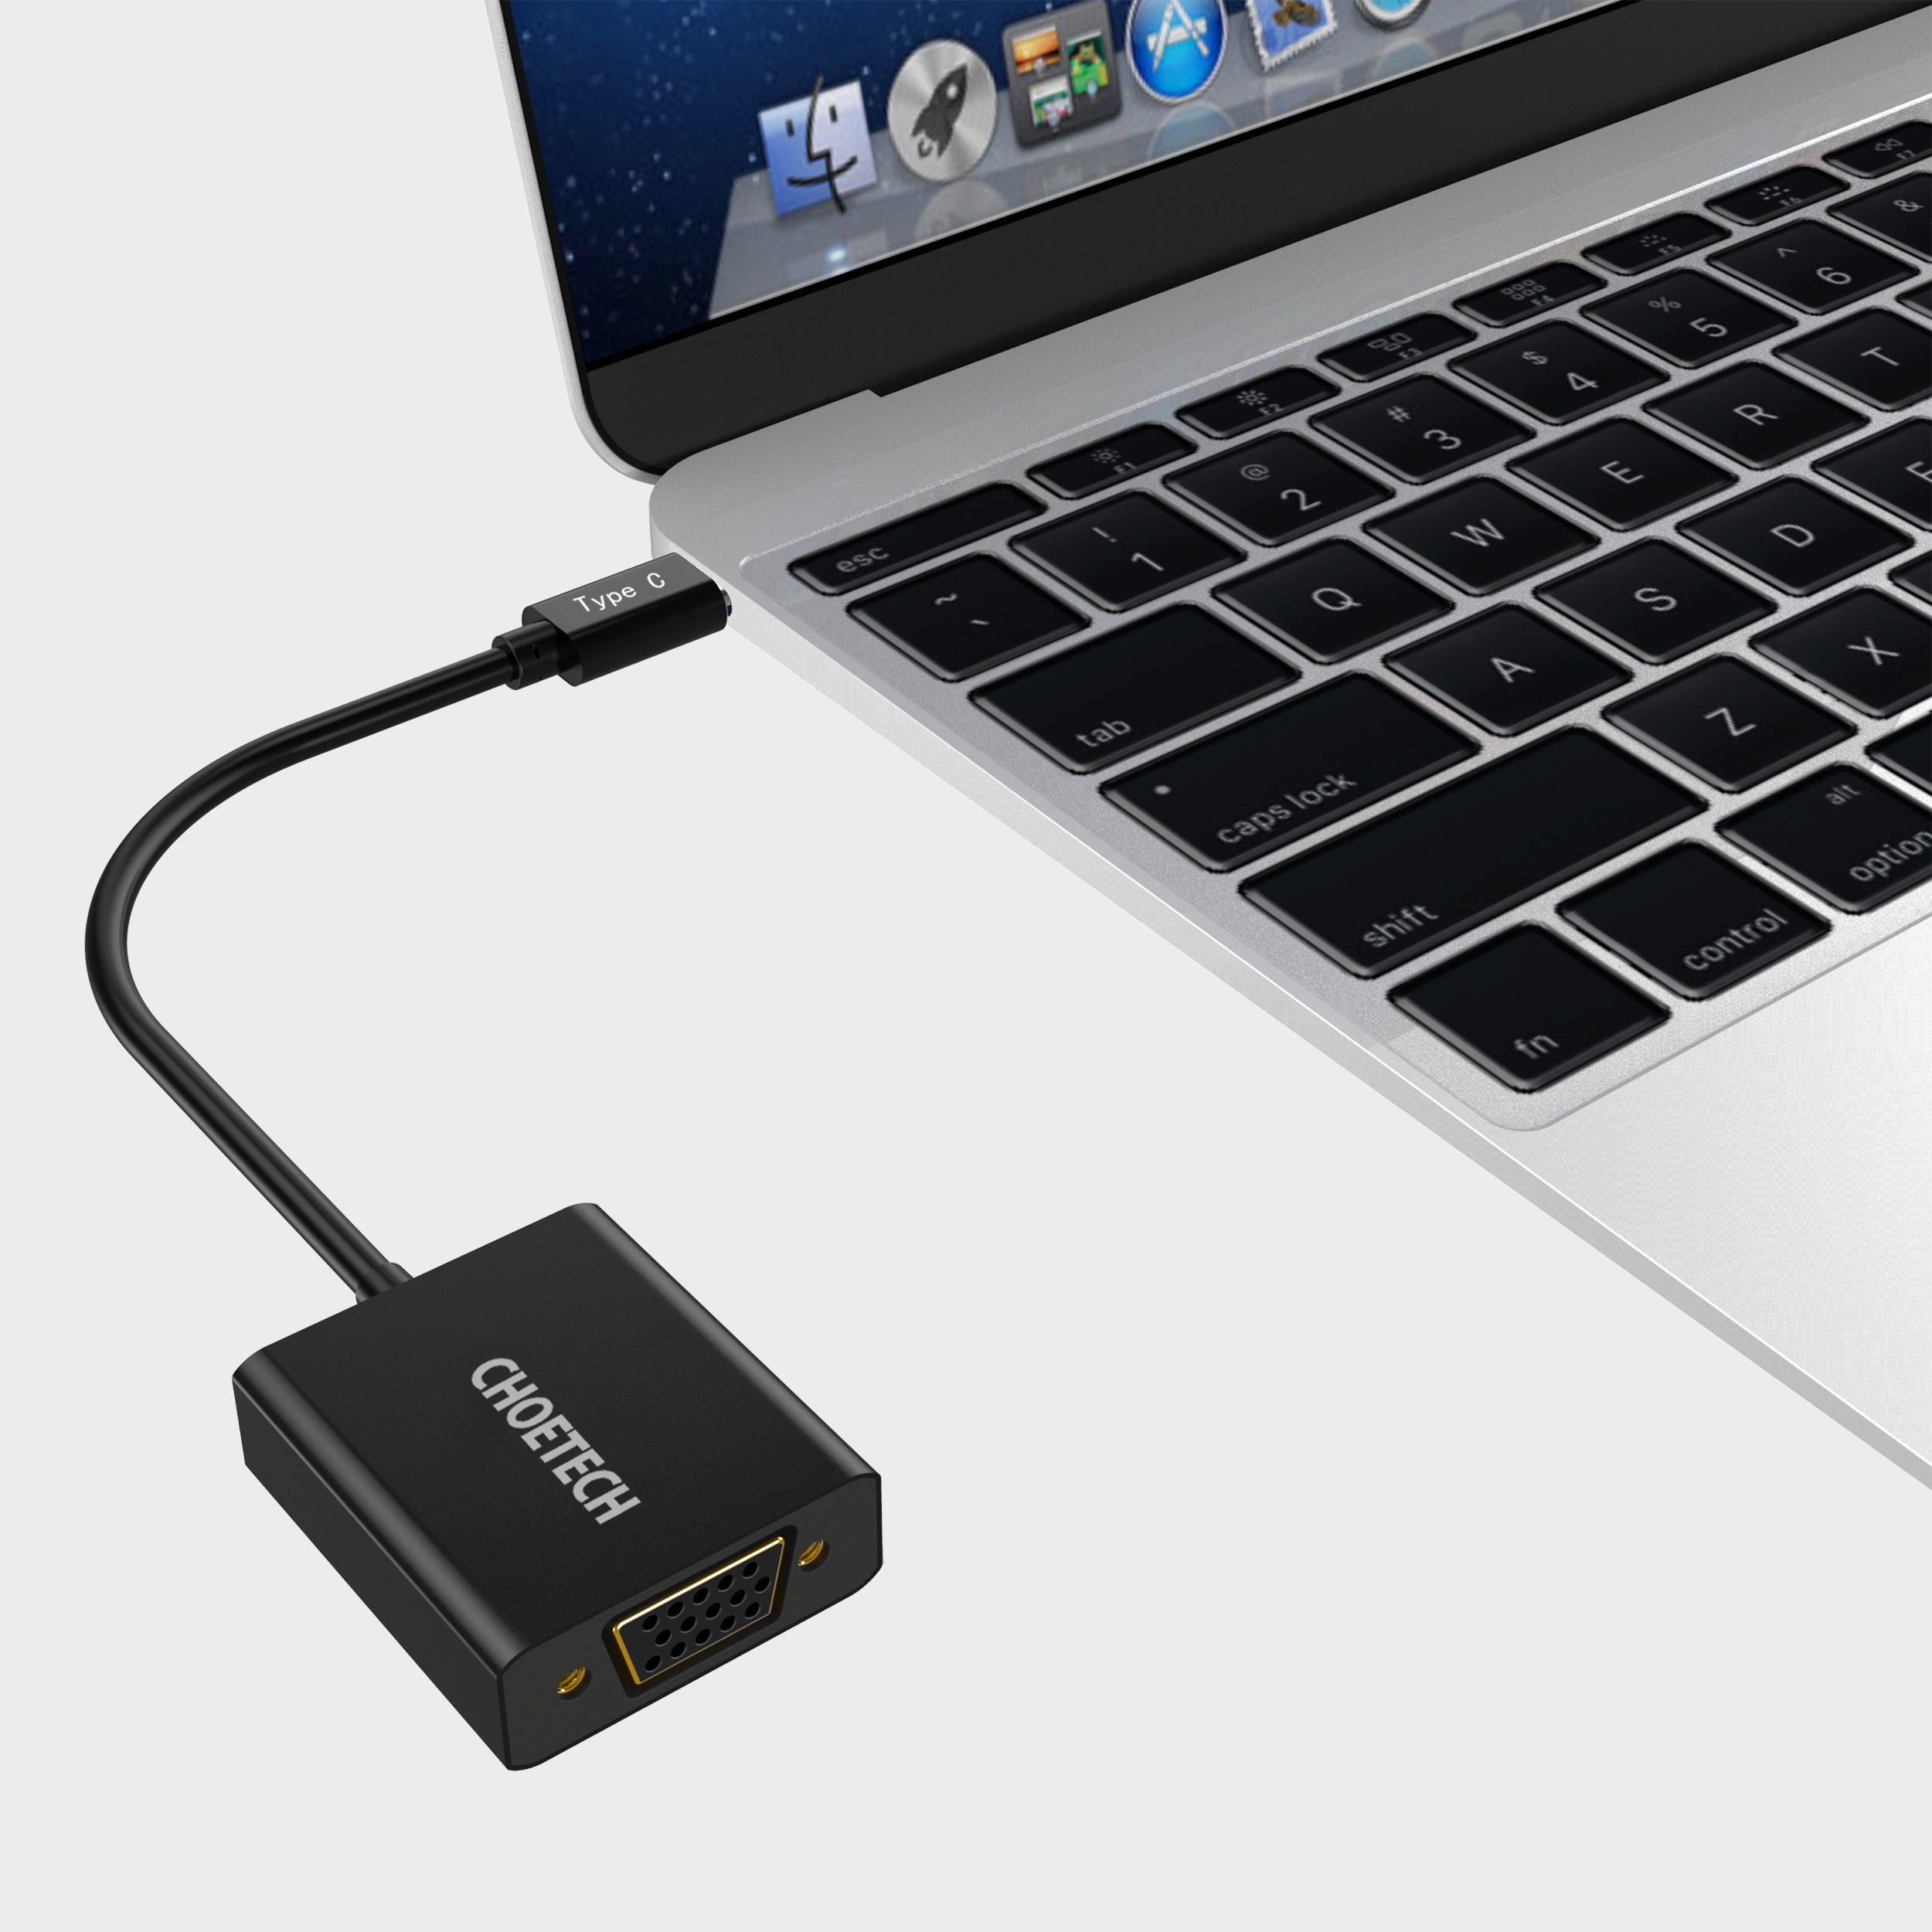 HUB-V01 Choetech 1080p Compatible USB 3.1 Adaptador USB tipo C a VGA (compatible con puerto Thunderbolt 3) para MacBook, Chromebook Pixel y más dispositivos tipo C